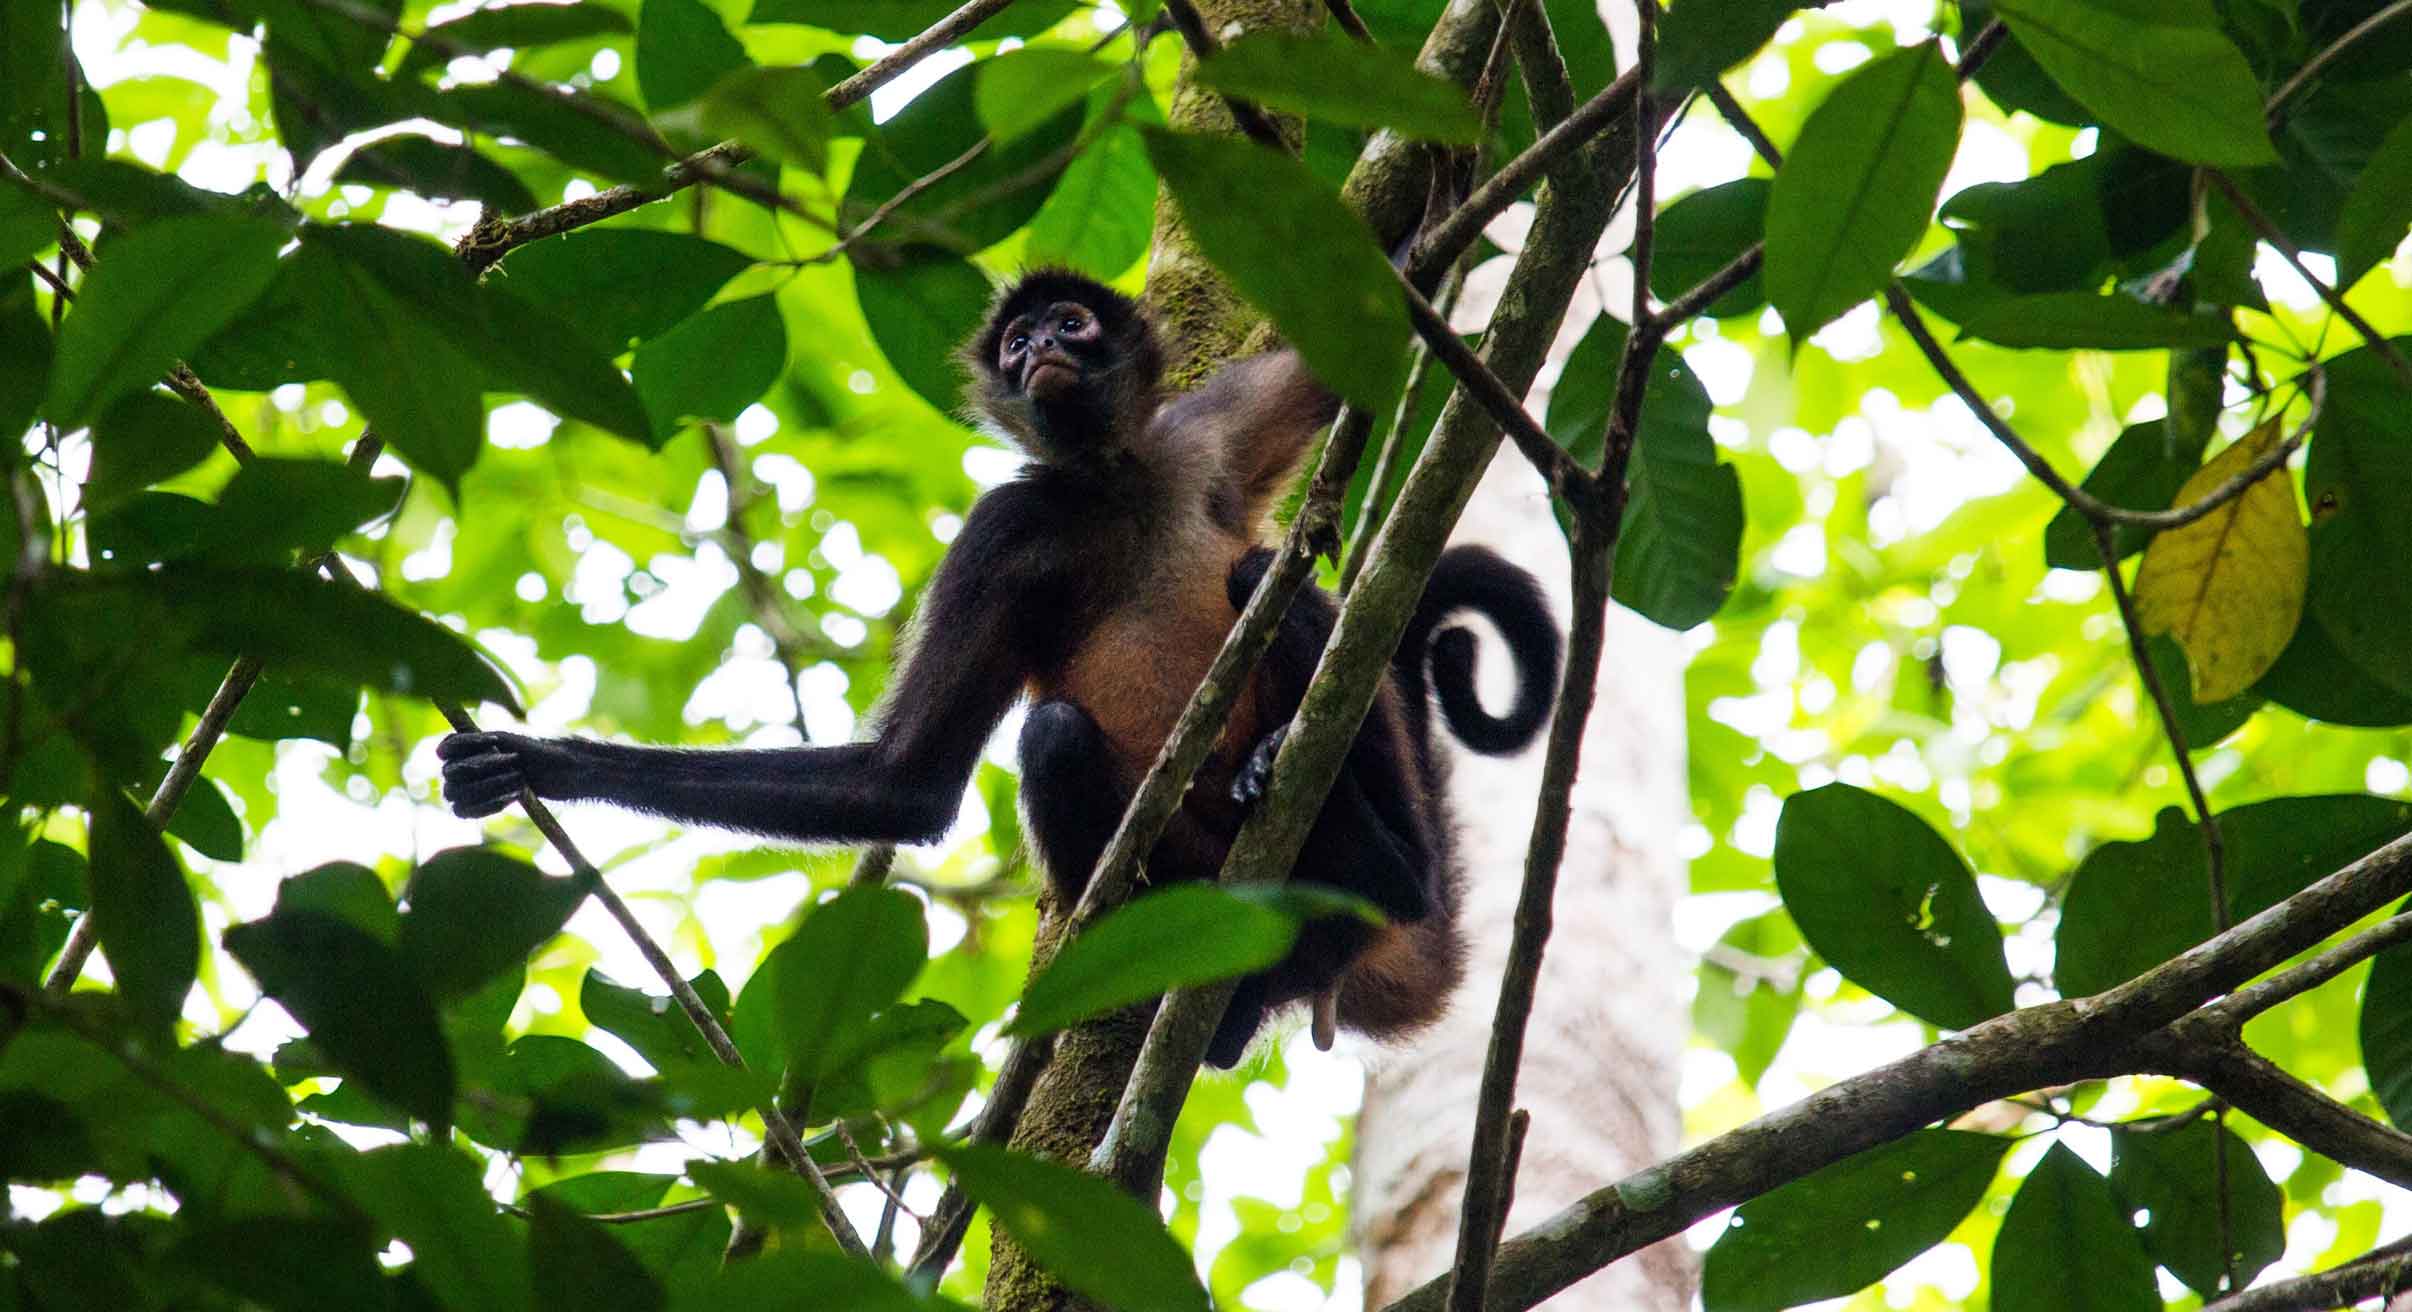 Spider monkey in Costa Rica rainforest